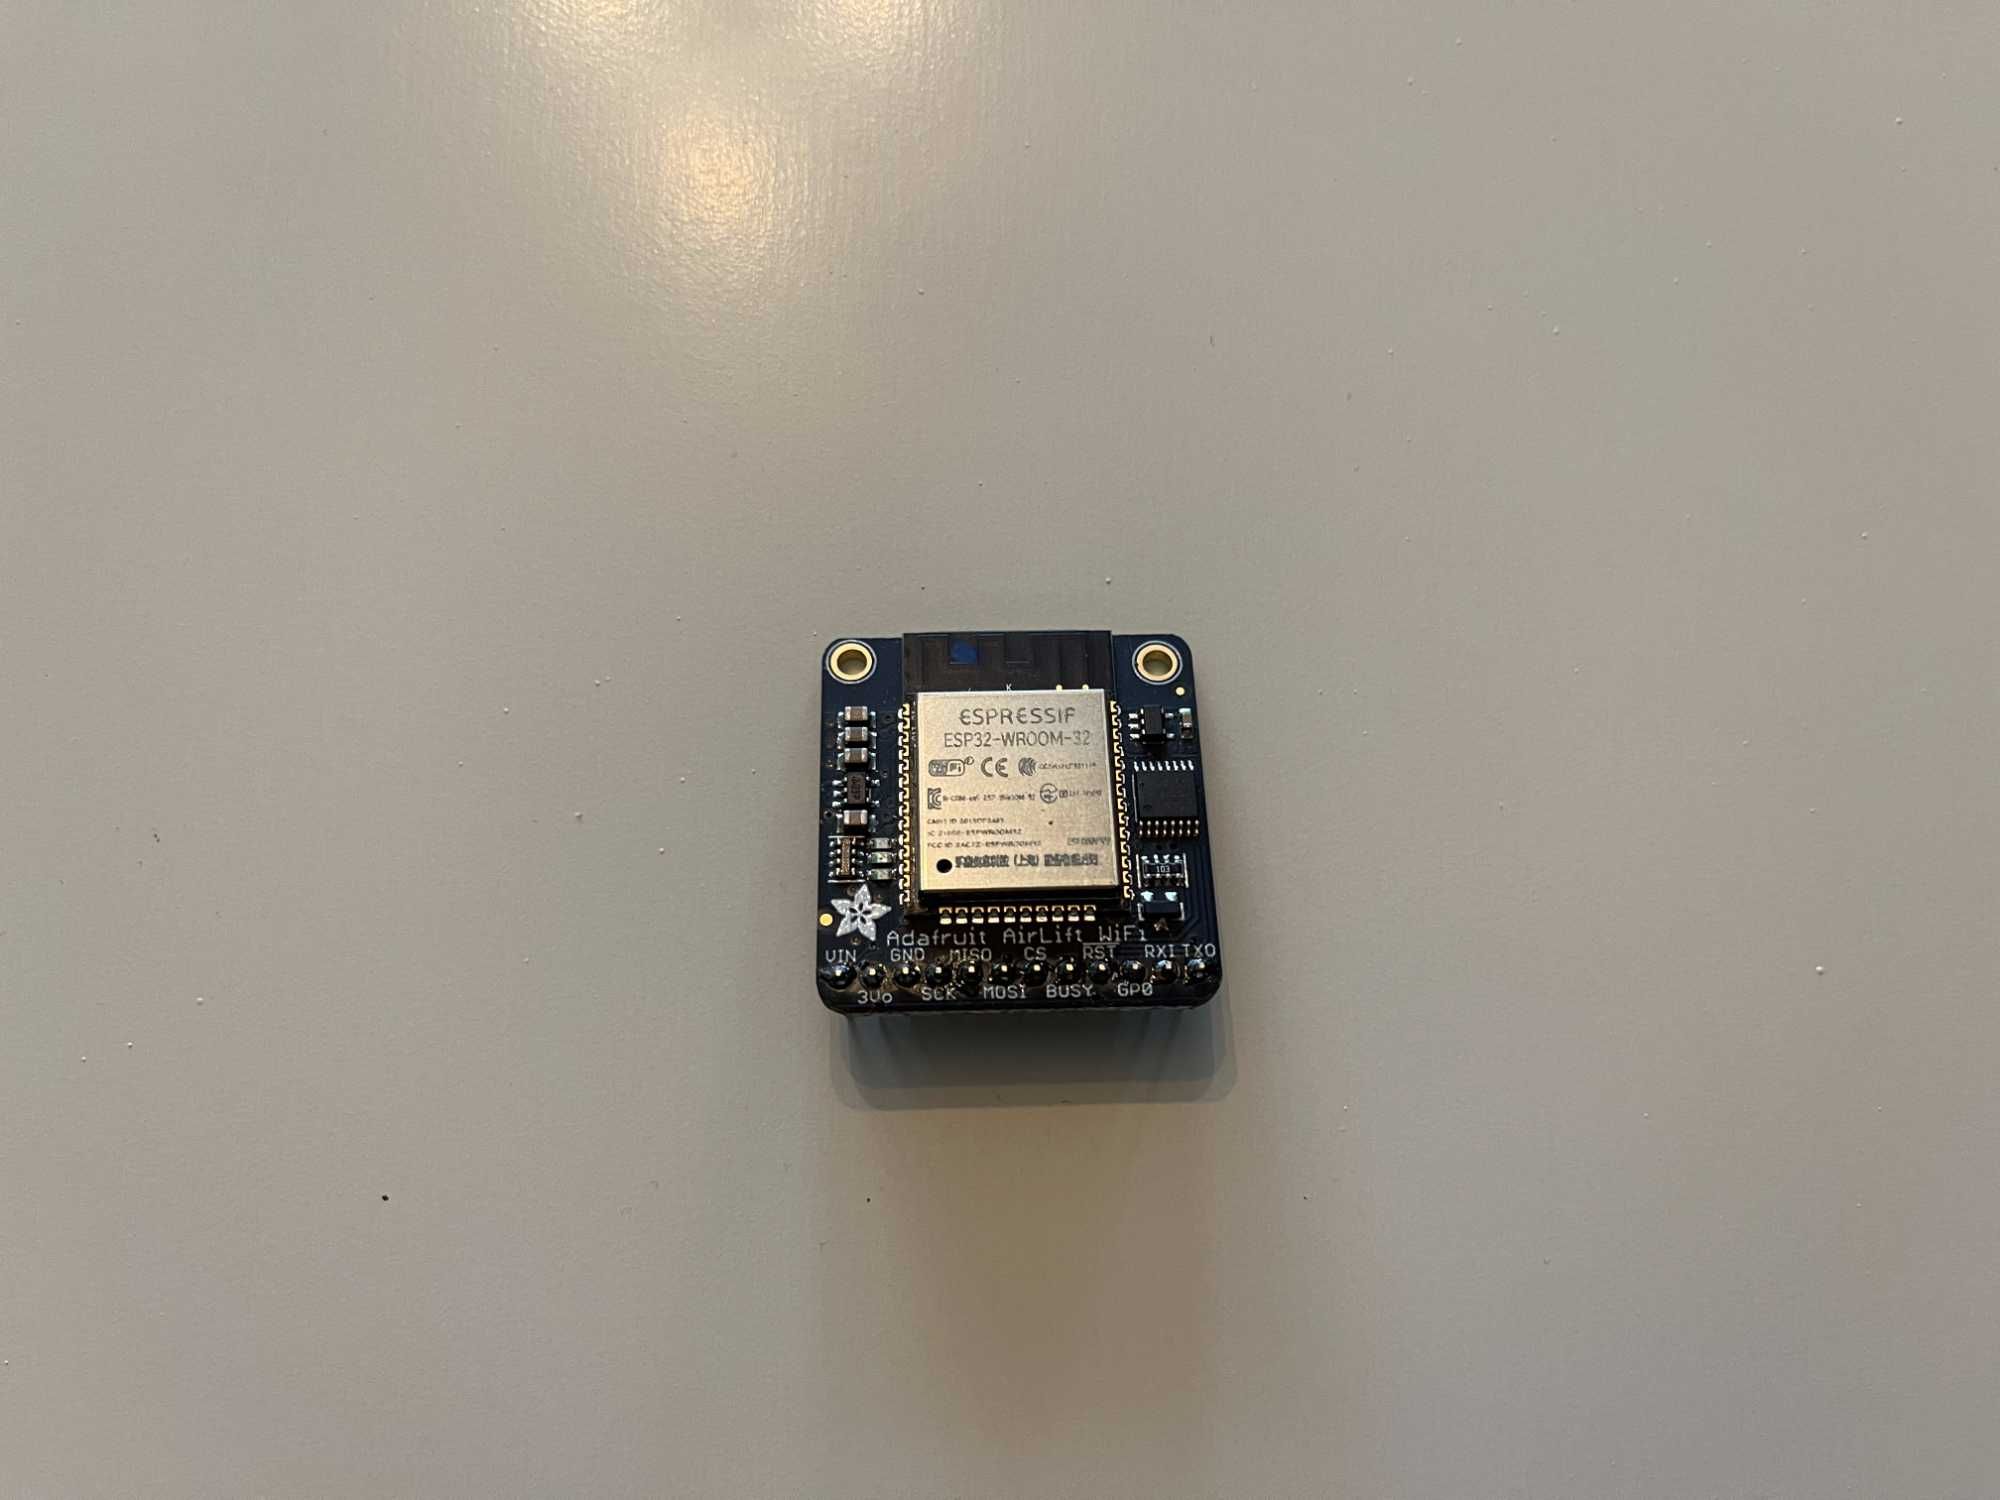 ESP32 WiFi (Adafruit AirLift) Co-Processor Breakout Board